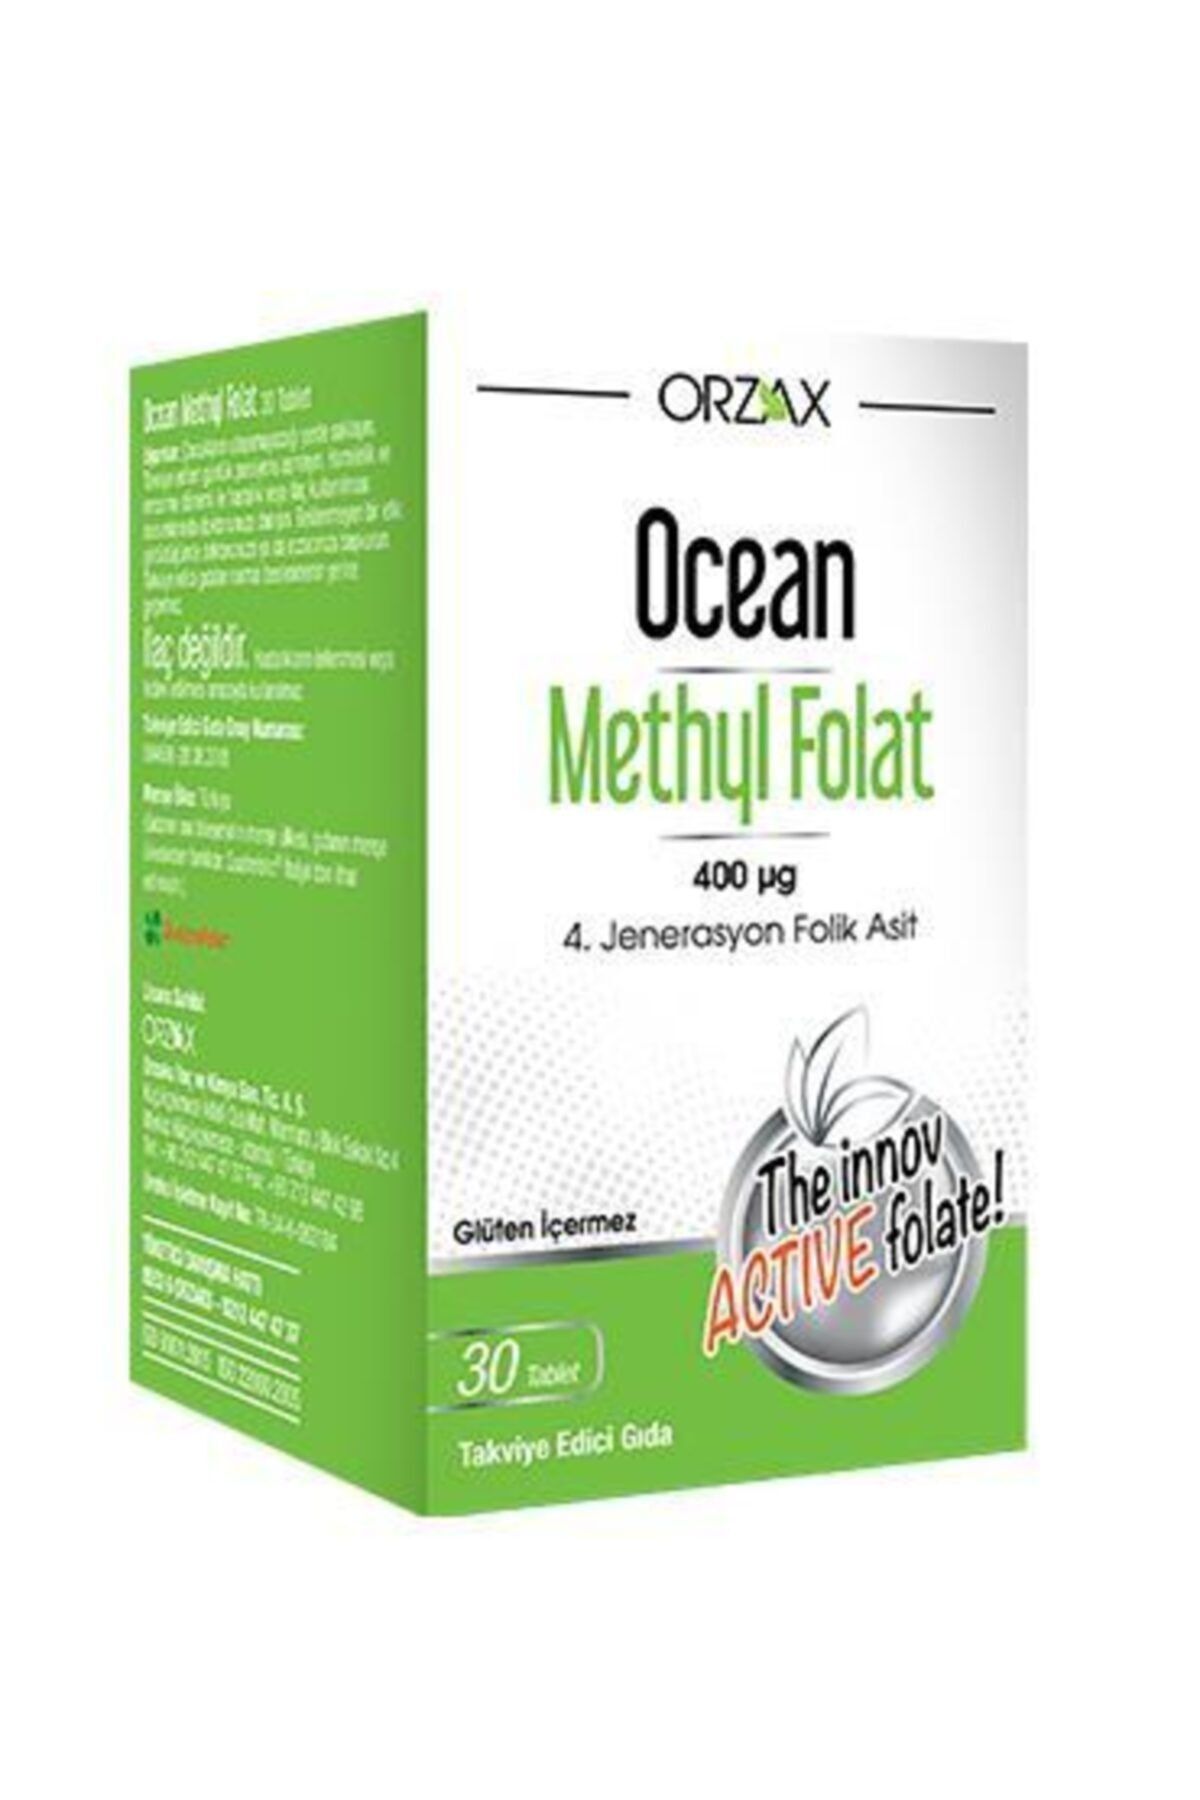 Ocean Ocean Methyl Folat 30 Tablet